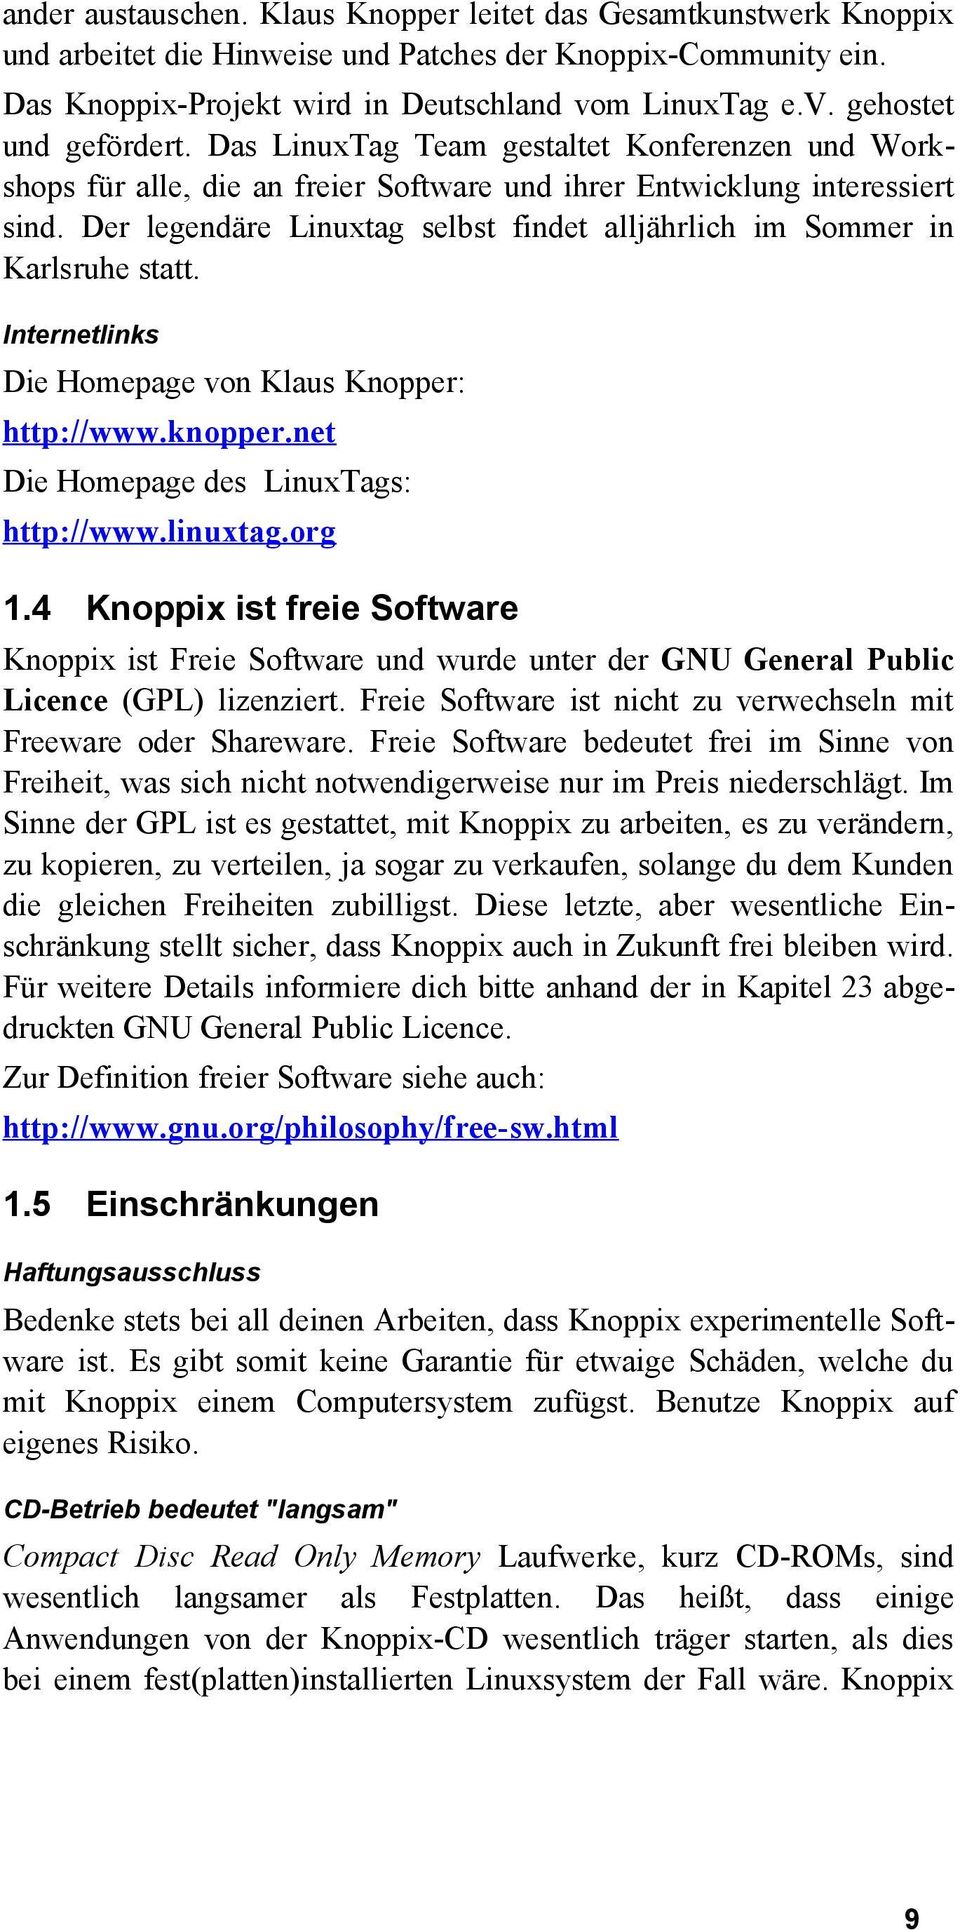 Der legendäre Linuxtag selbst findet alljährlich im Sommer in Karlsruhe statt. Internetlinks Die Homepage von Klaus Knopper: http://www.knopper.net Die Homepage des LinuxTags: http://www.linuxtag.